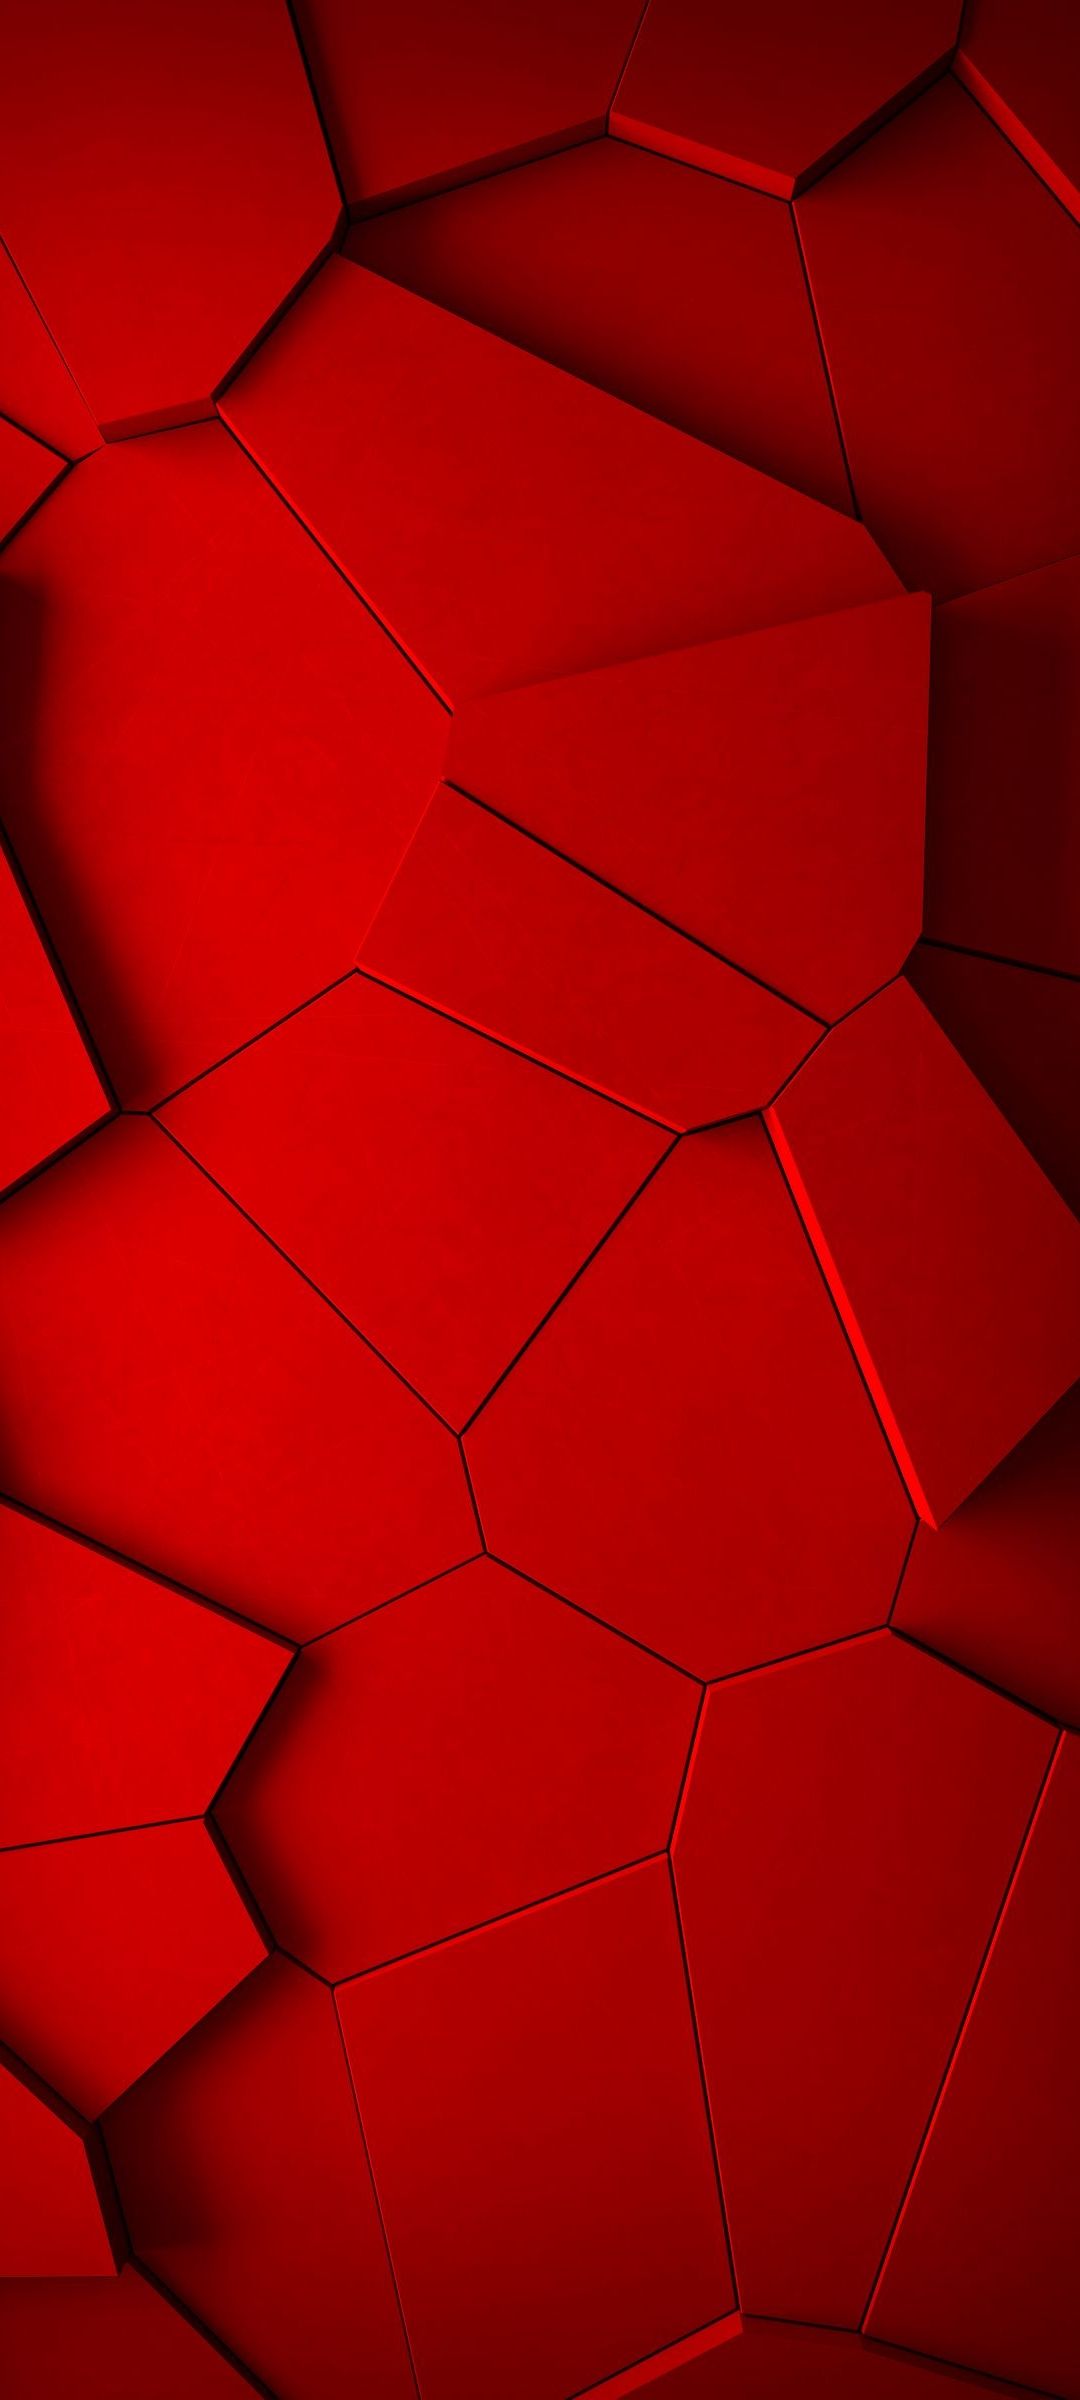 Red Blocks Phone Wallpaper